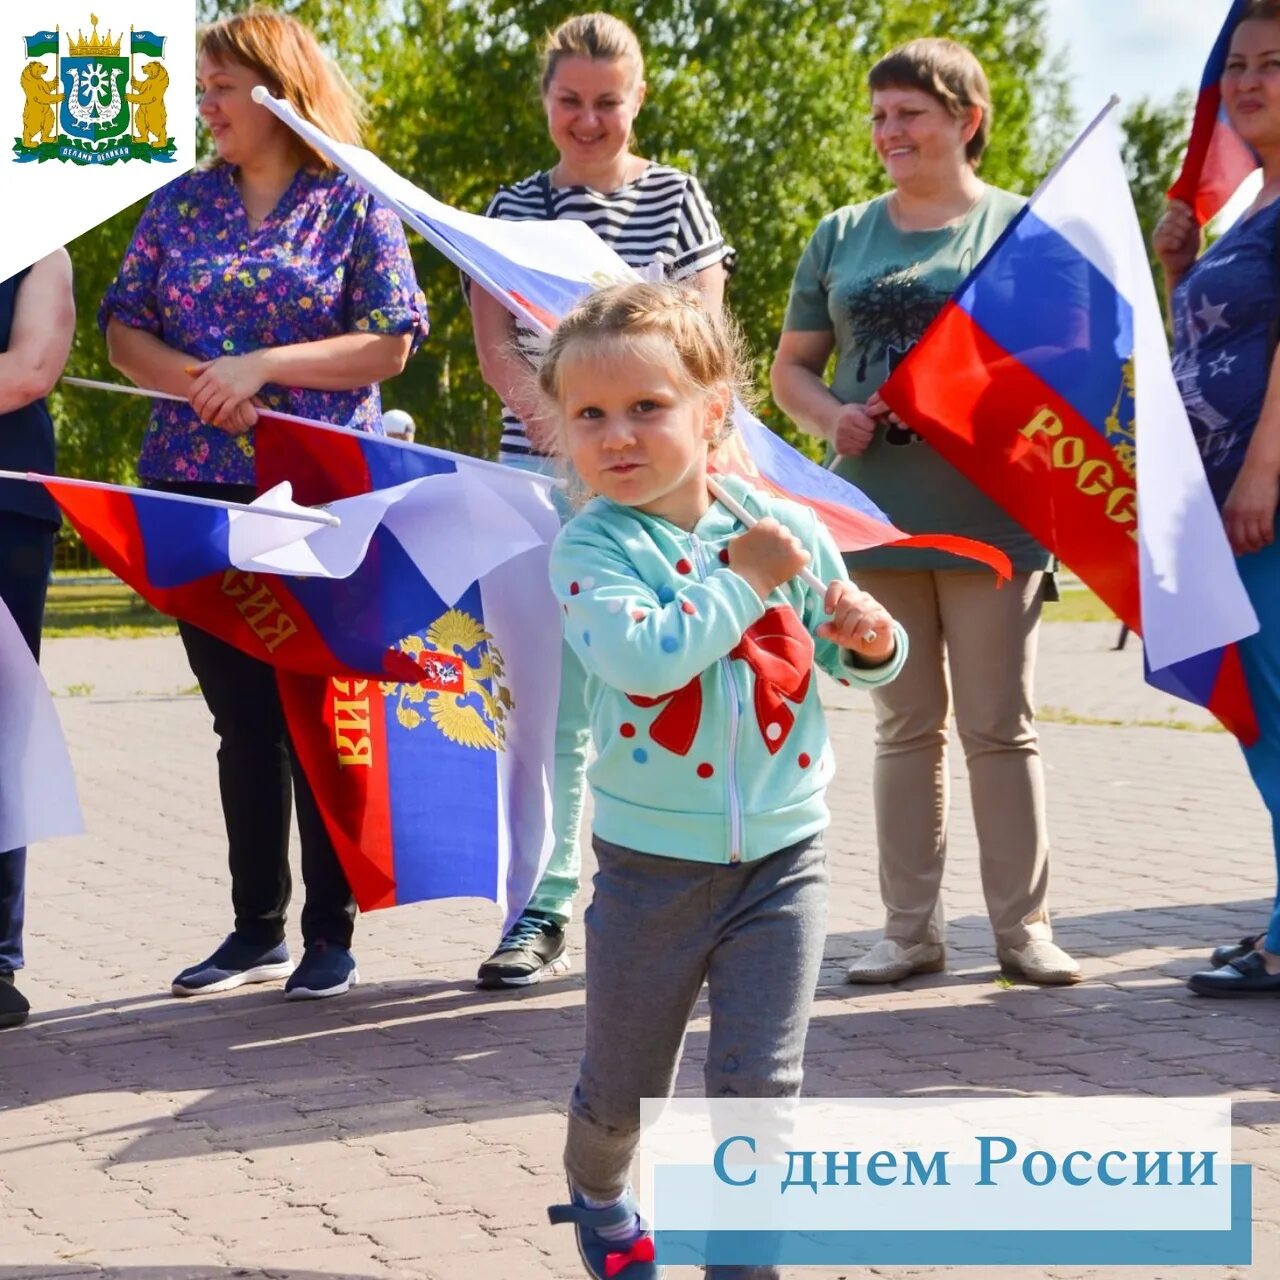 12 июня независимости. День независимости России. День России многонациональный праздник. С днем России многонациональный народ. День независимости 12 июня.